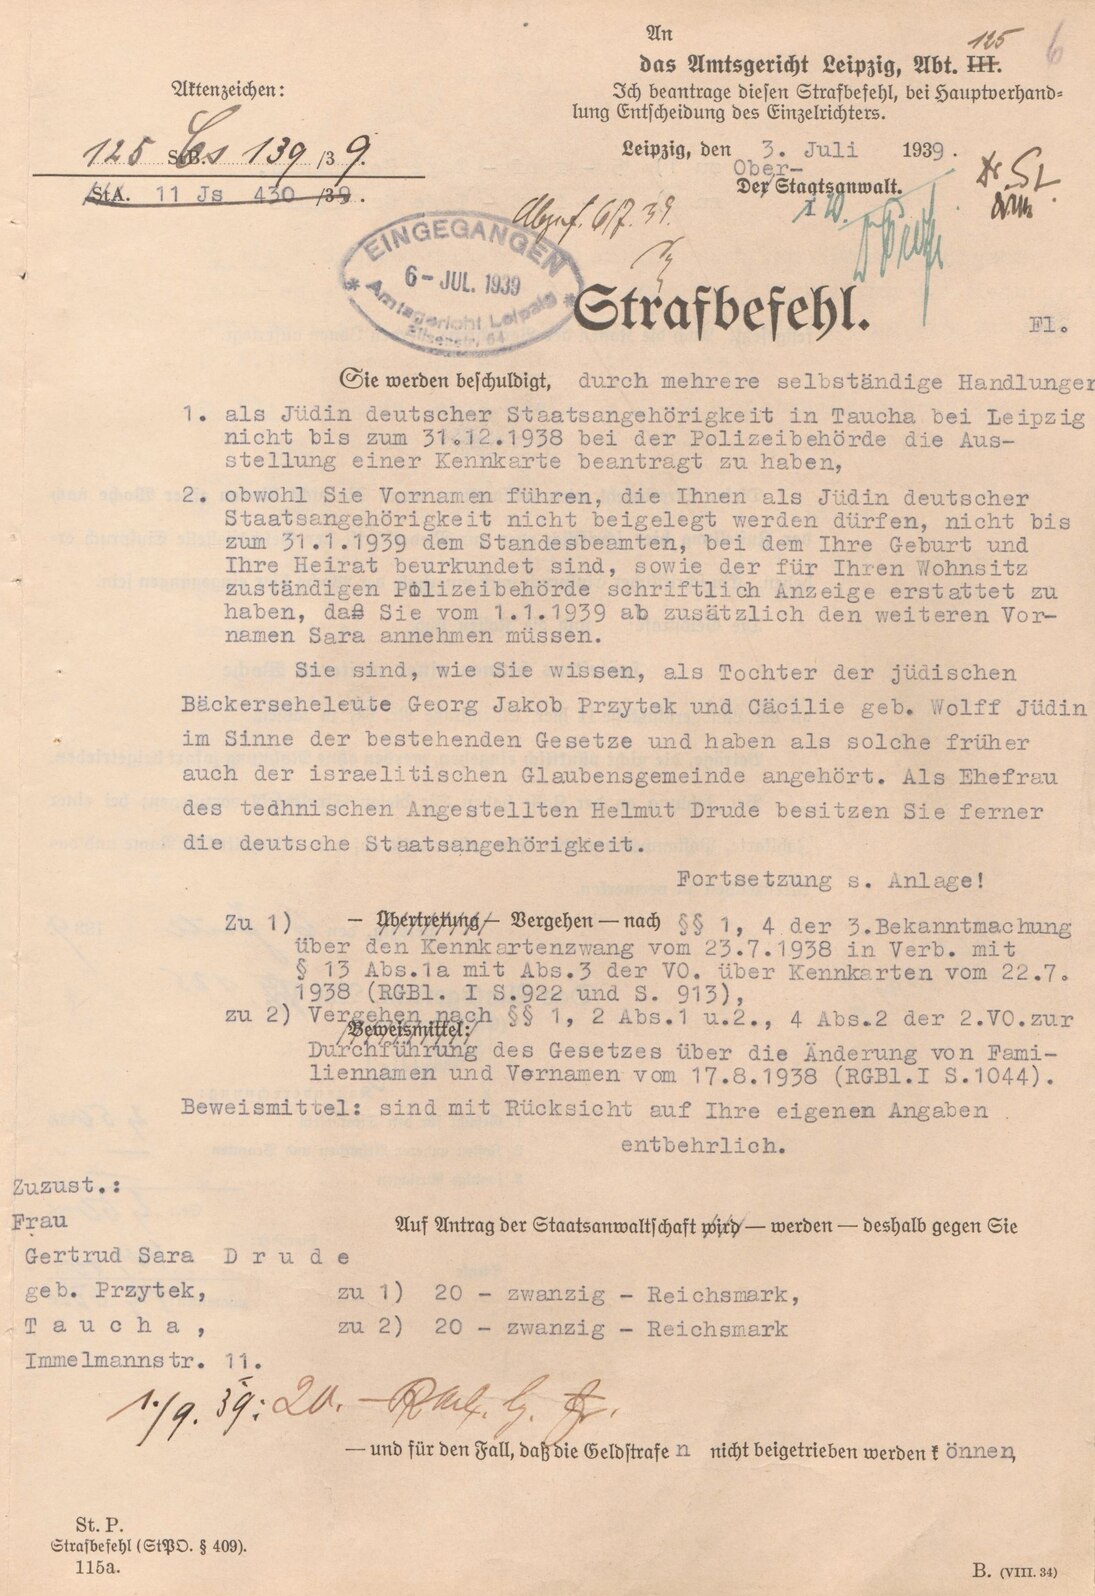 Strafbefehl für Gertrud Drude wegen Verstoßes gegen den Kennkartenzwang und den Zwangsvornamen Sara, 3. Juli 1939 (SächsStA-L, 20124 Amtsgericht Leipzig, Nr. 1049)